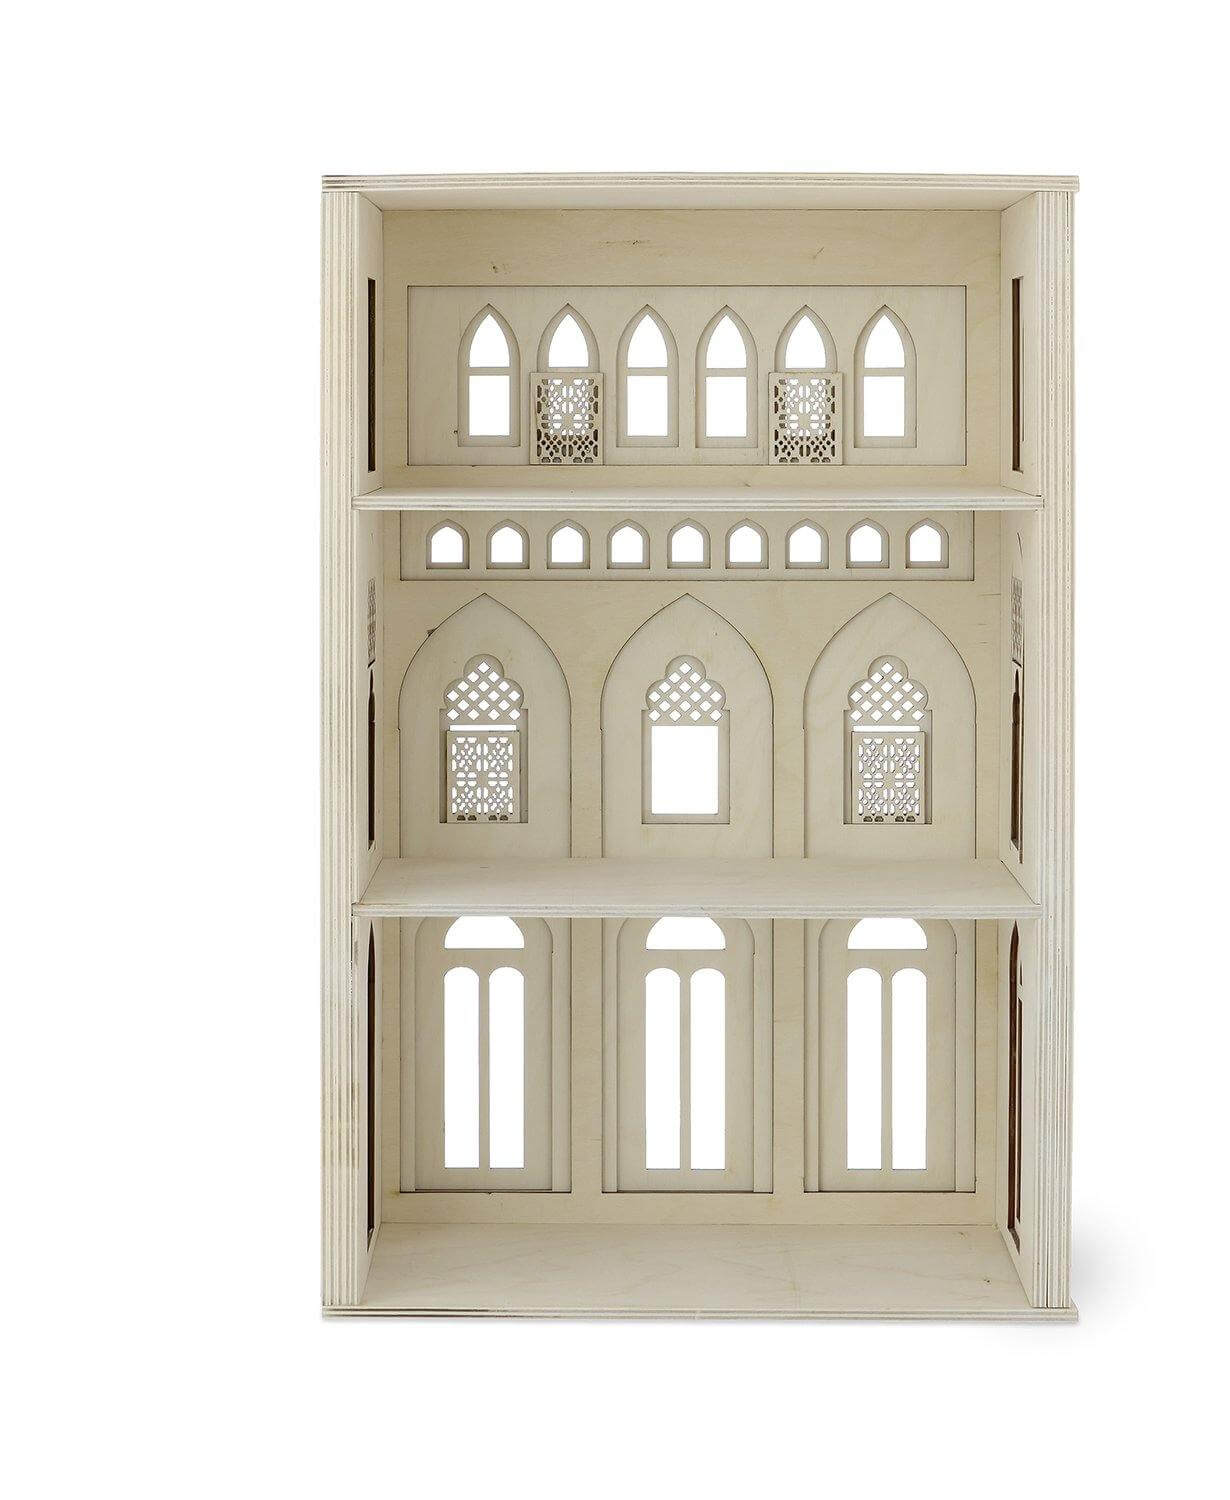 Miniature House - Play House - Doll House. Fra Kolekto.